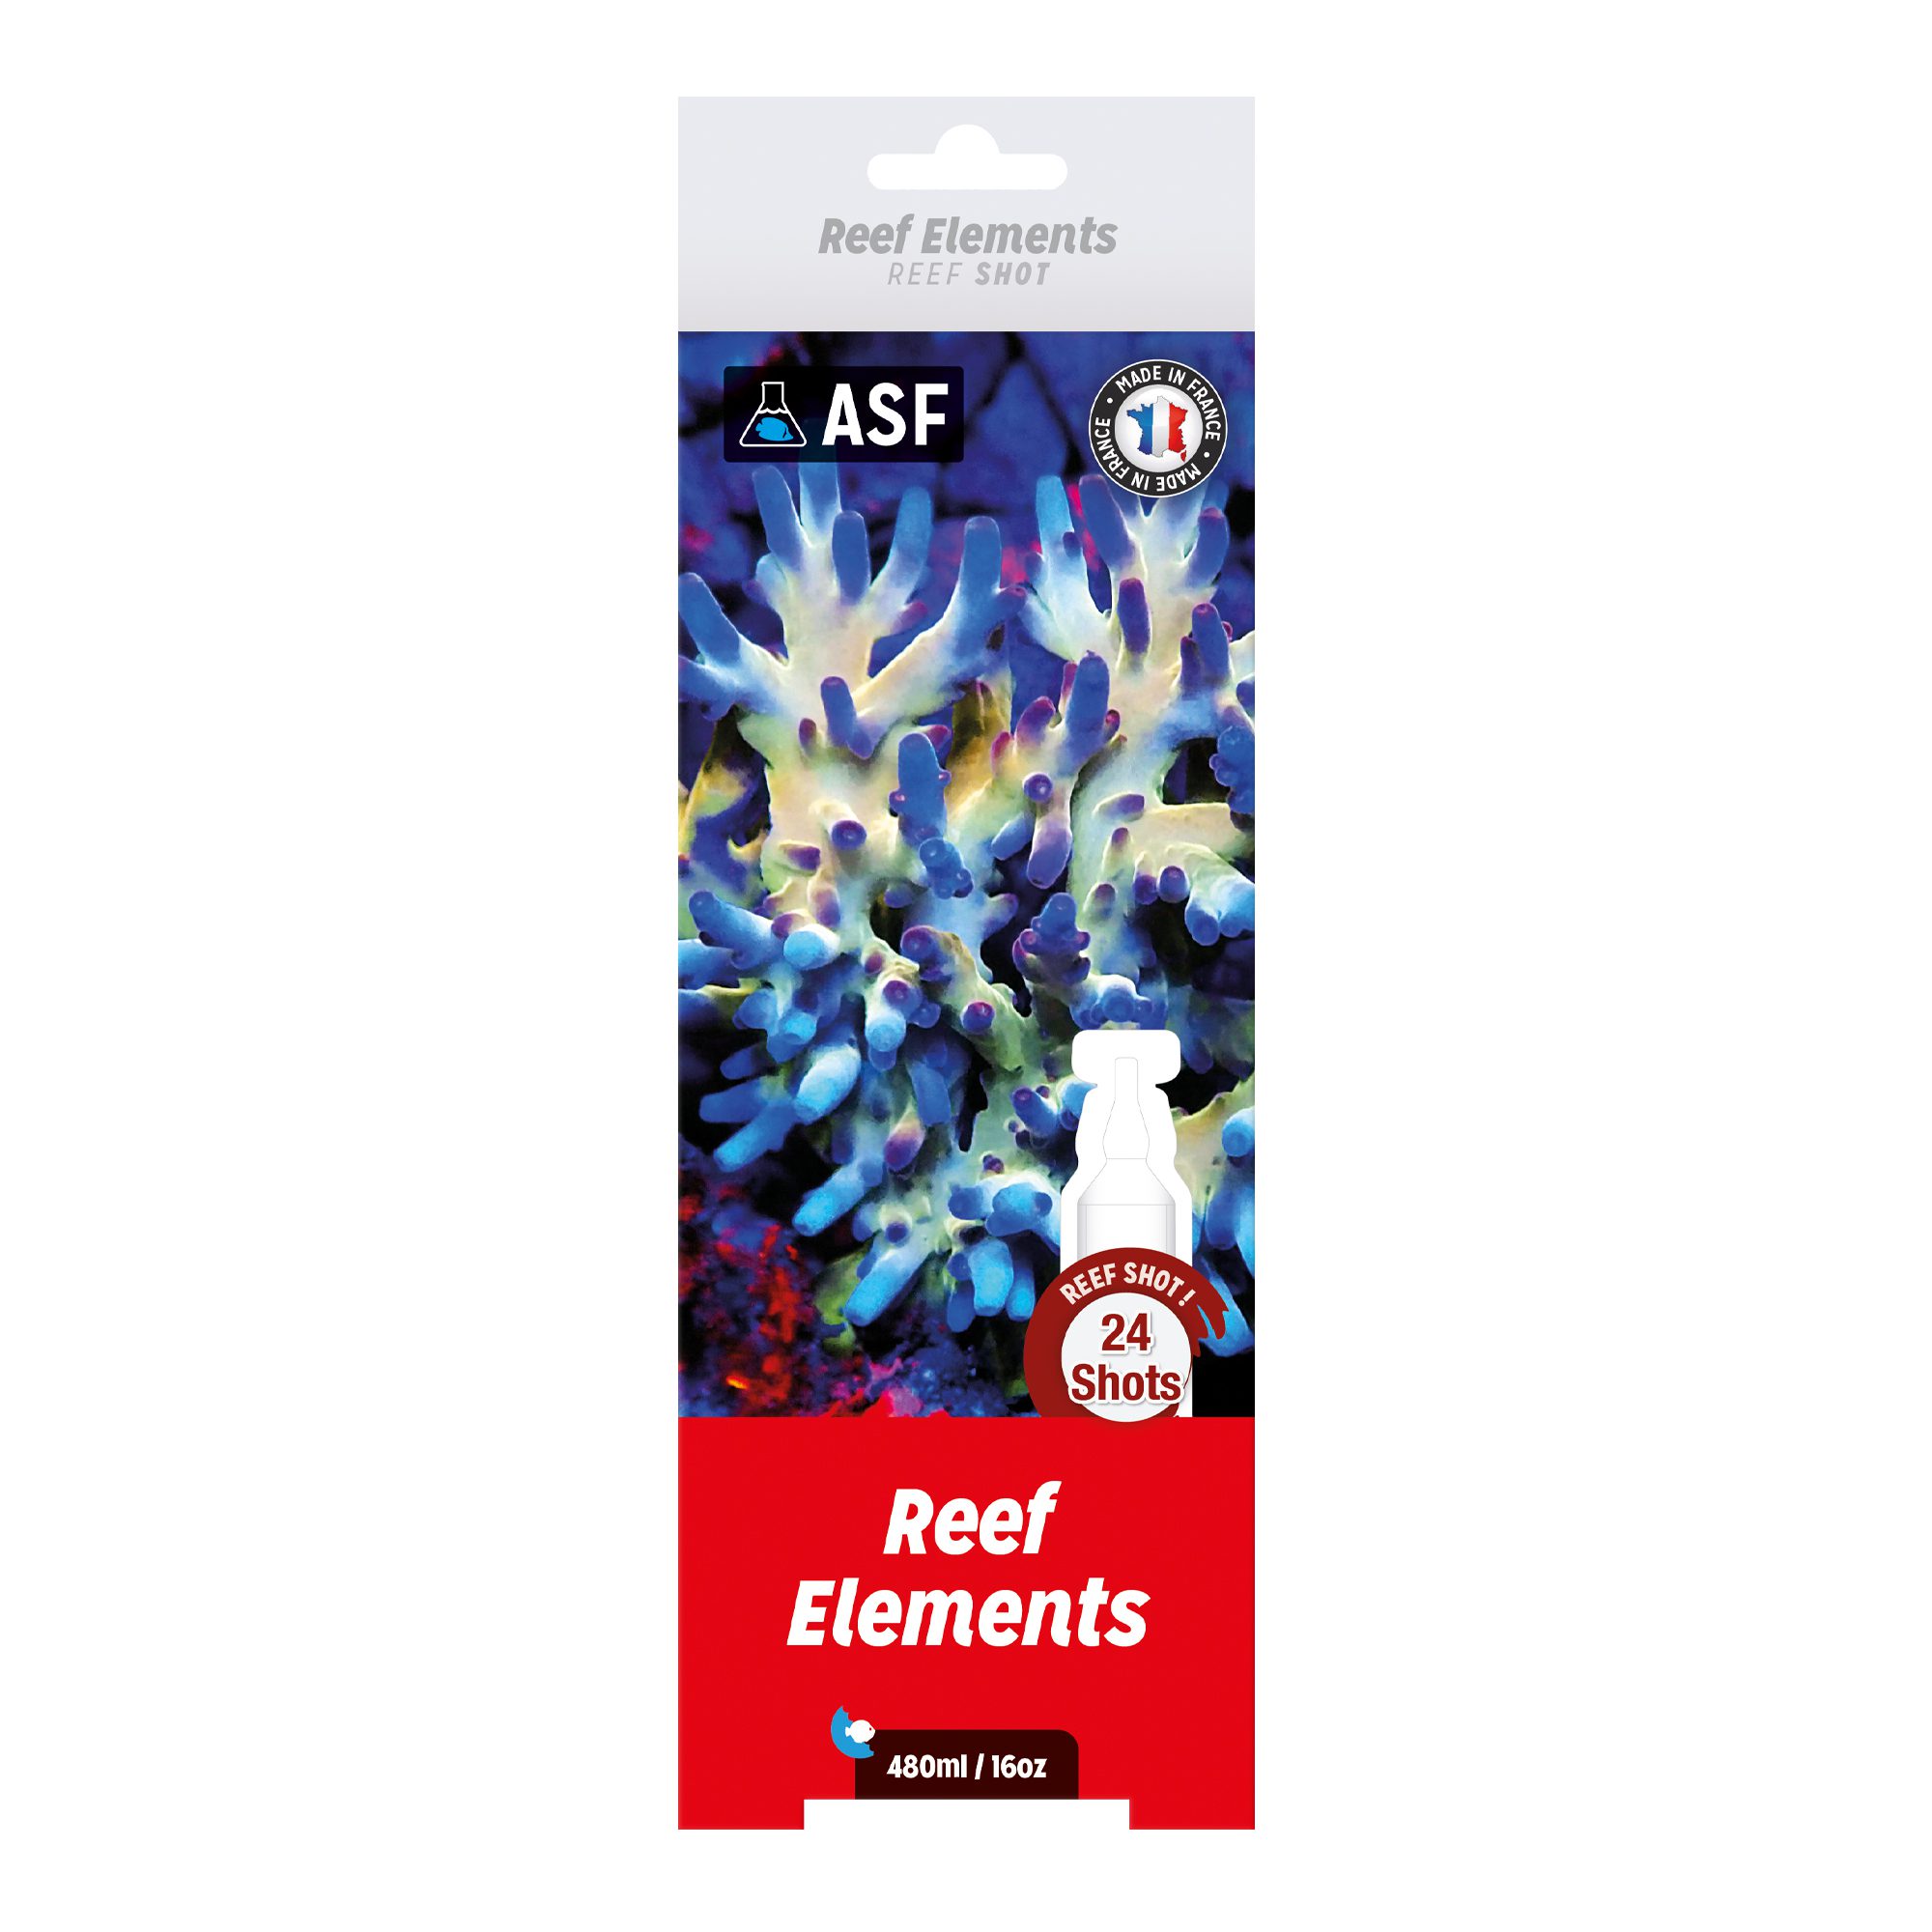 AS Reef Elements Reef Shots 24 pack 480ml